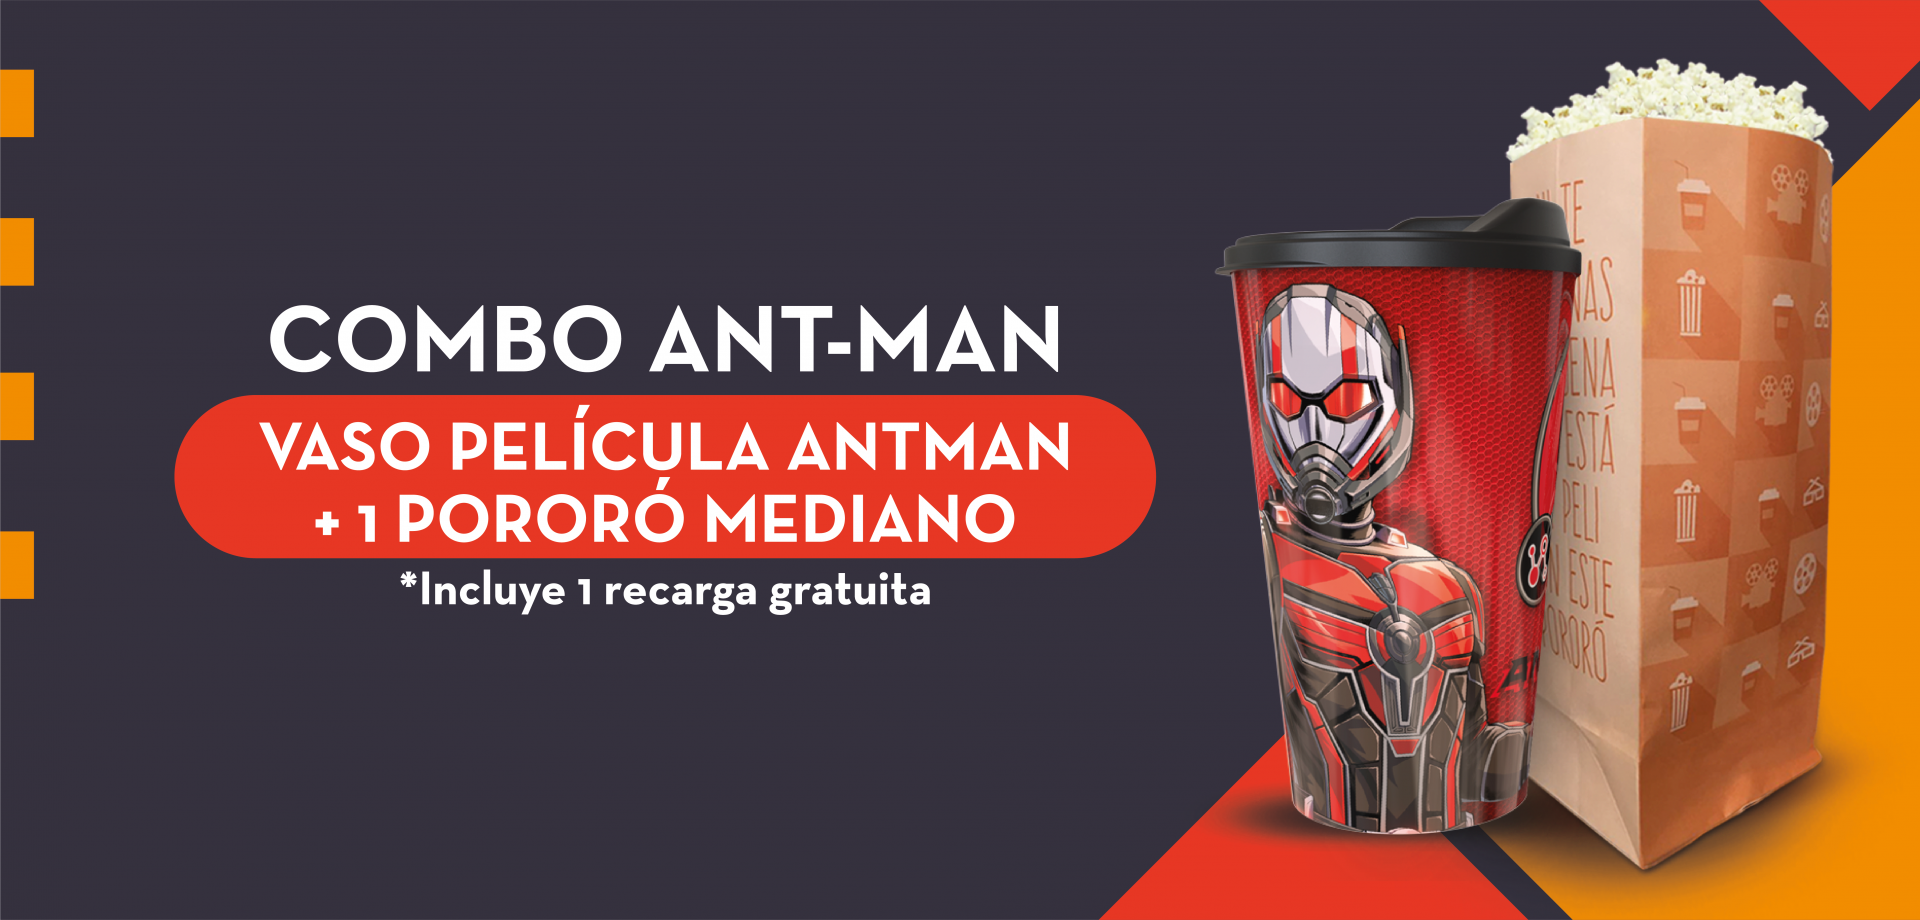 Imagen de Combo Ant-Man